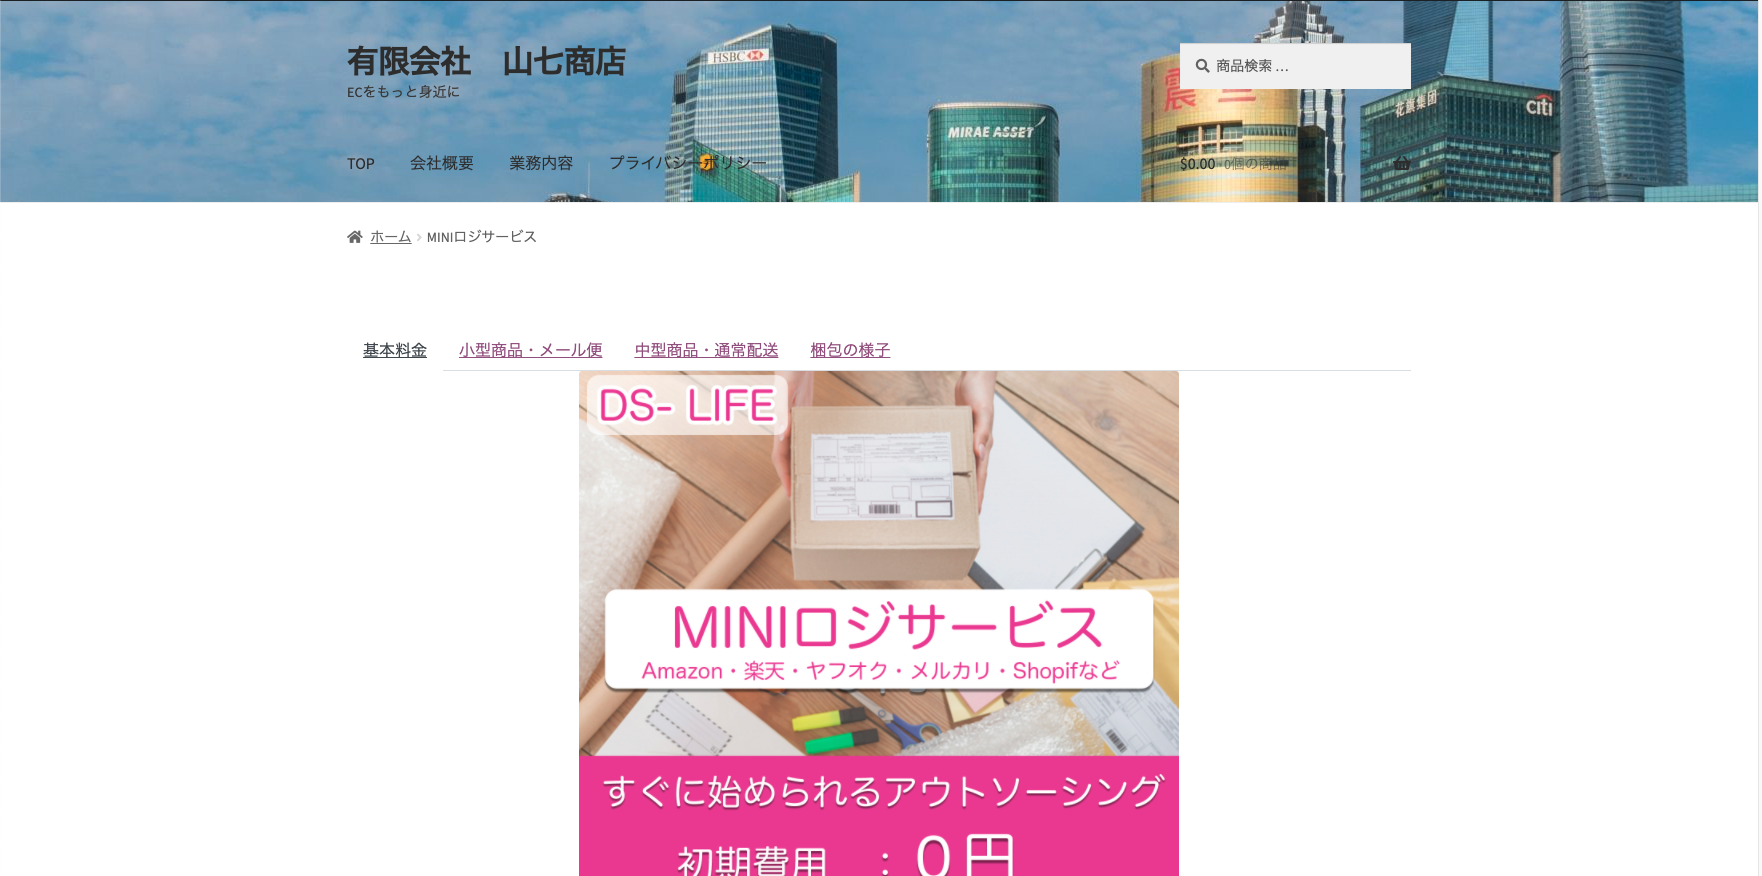 有限会社山七商店のDS-LIFEサービス